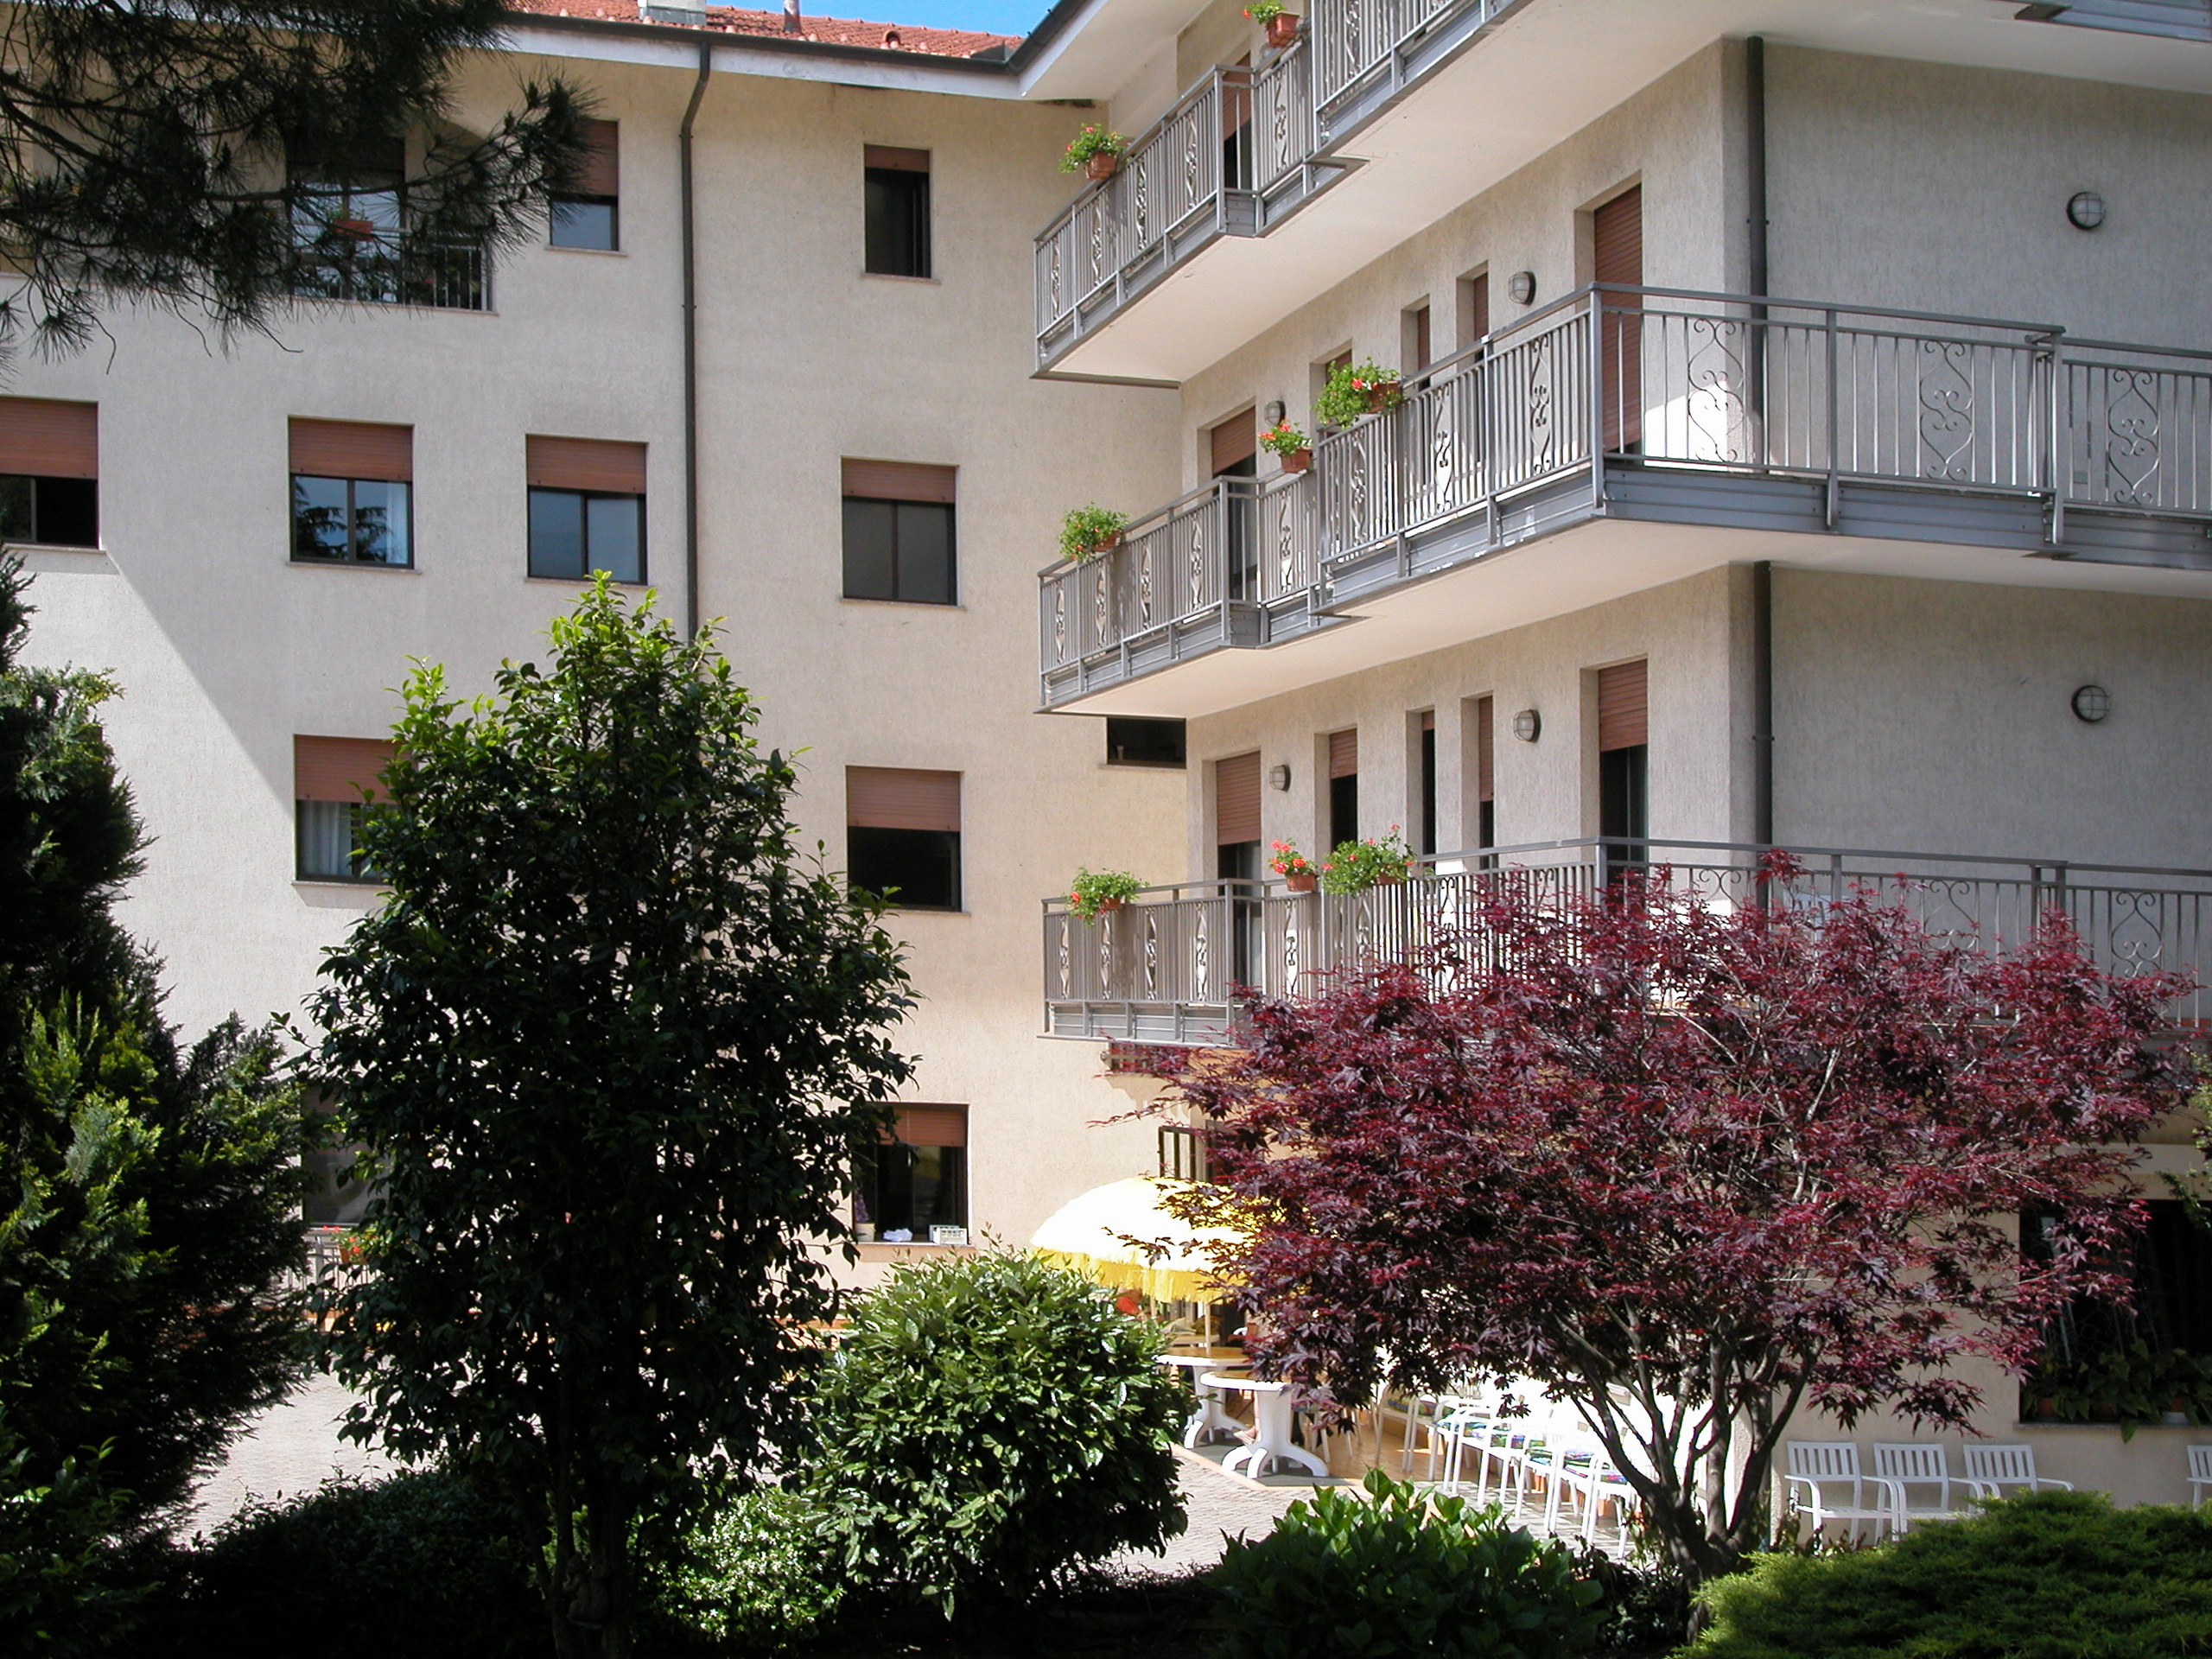 villa San Benedetto Paruzzaro / casa di riposo vista esterna